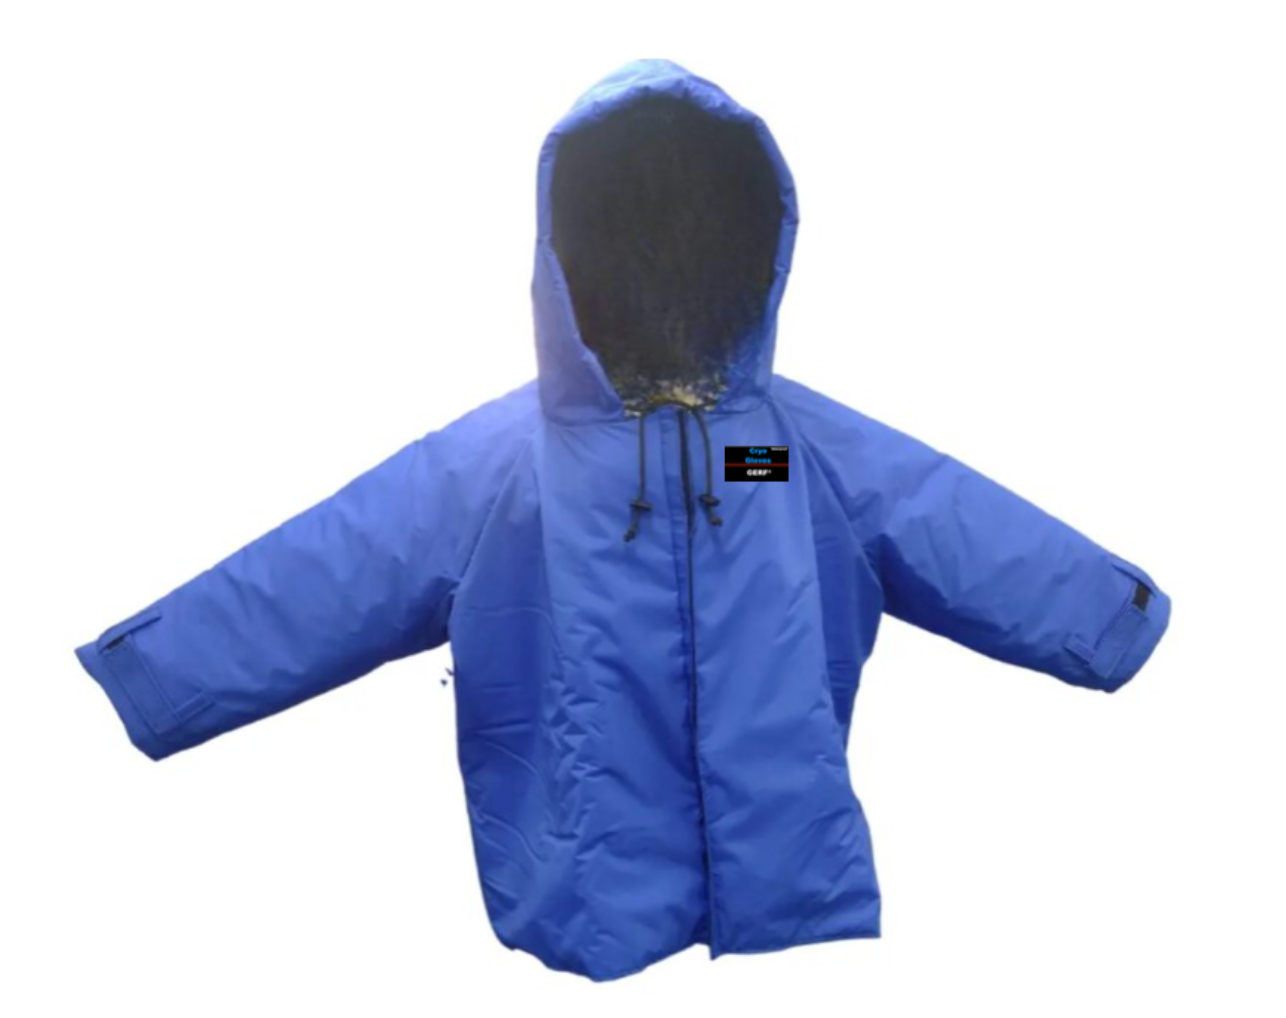 Waterproof Cryo Jacket with Hood